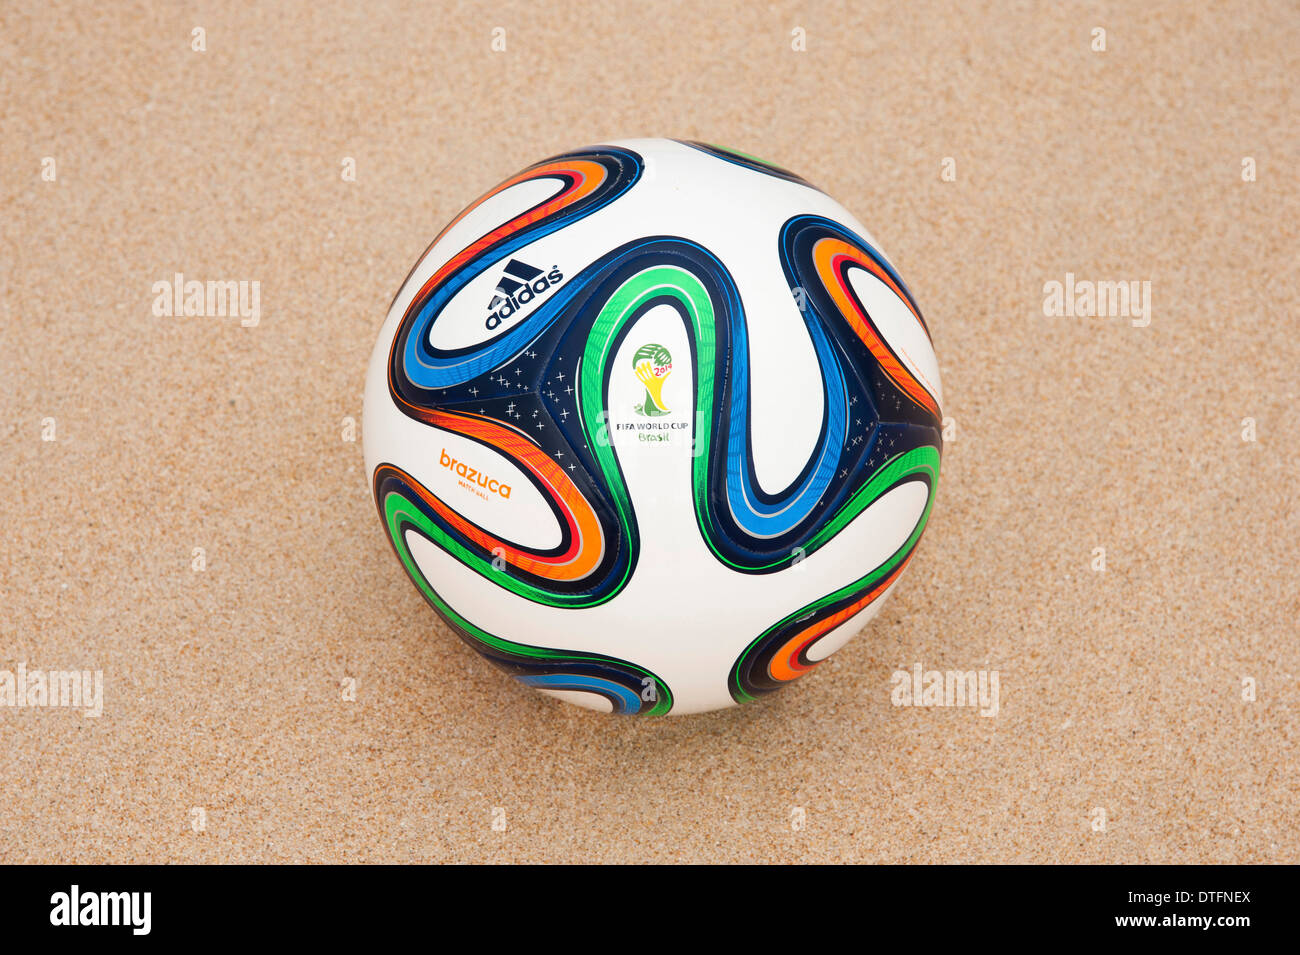 Brazuca (Replikat), offizieller Matchball der Fussball Weltmeisterschaft 2014 FIFA en Brésil im Sand Banque D'Images